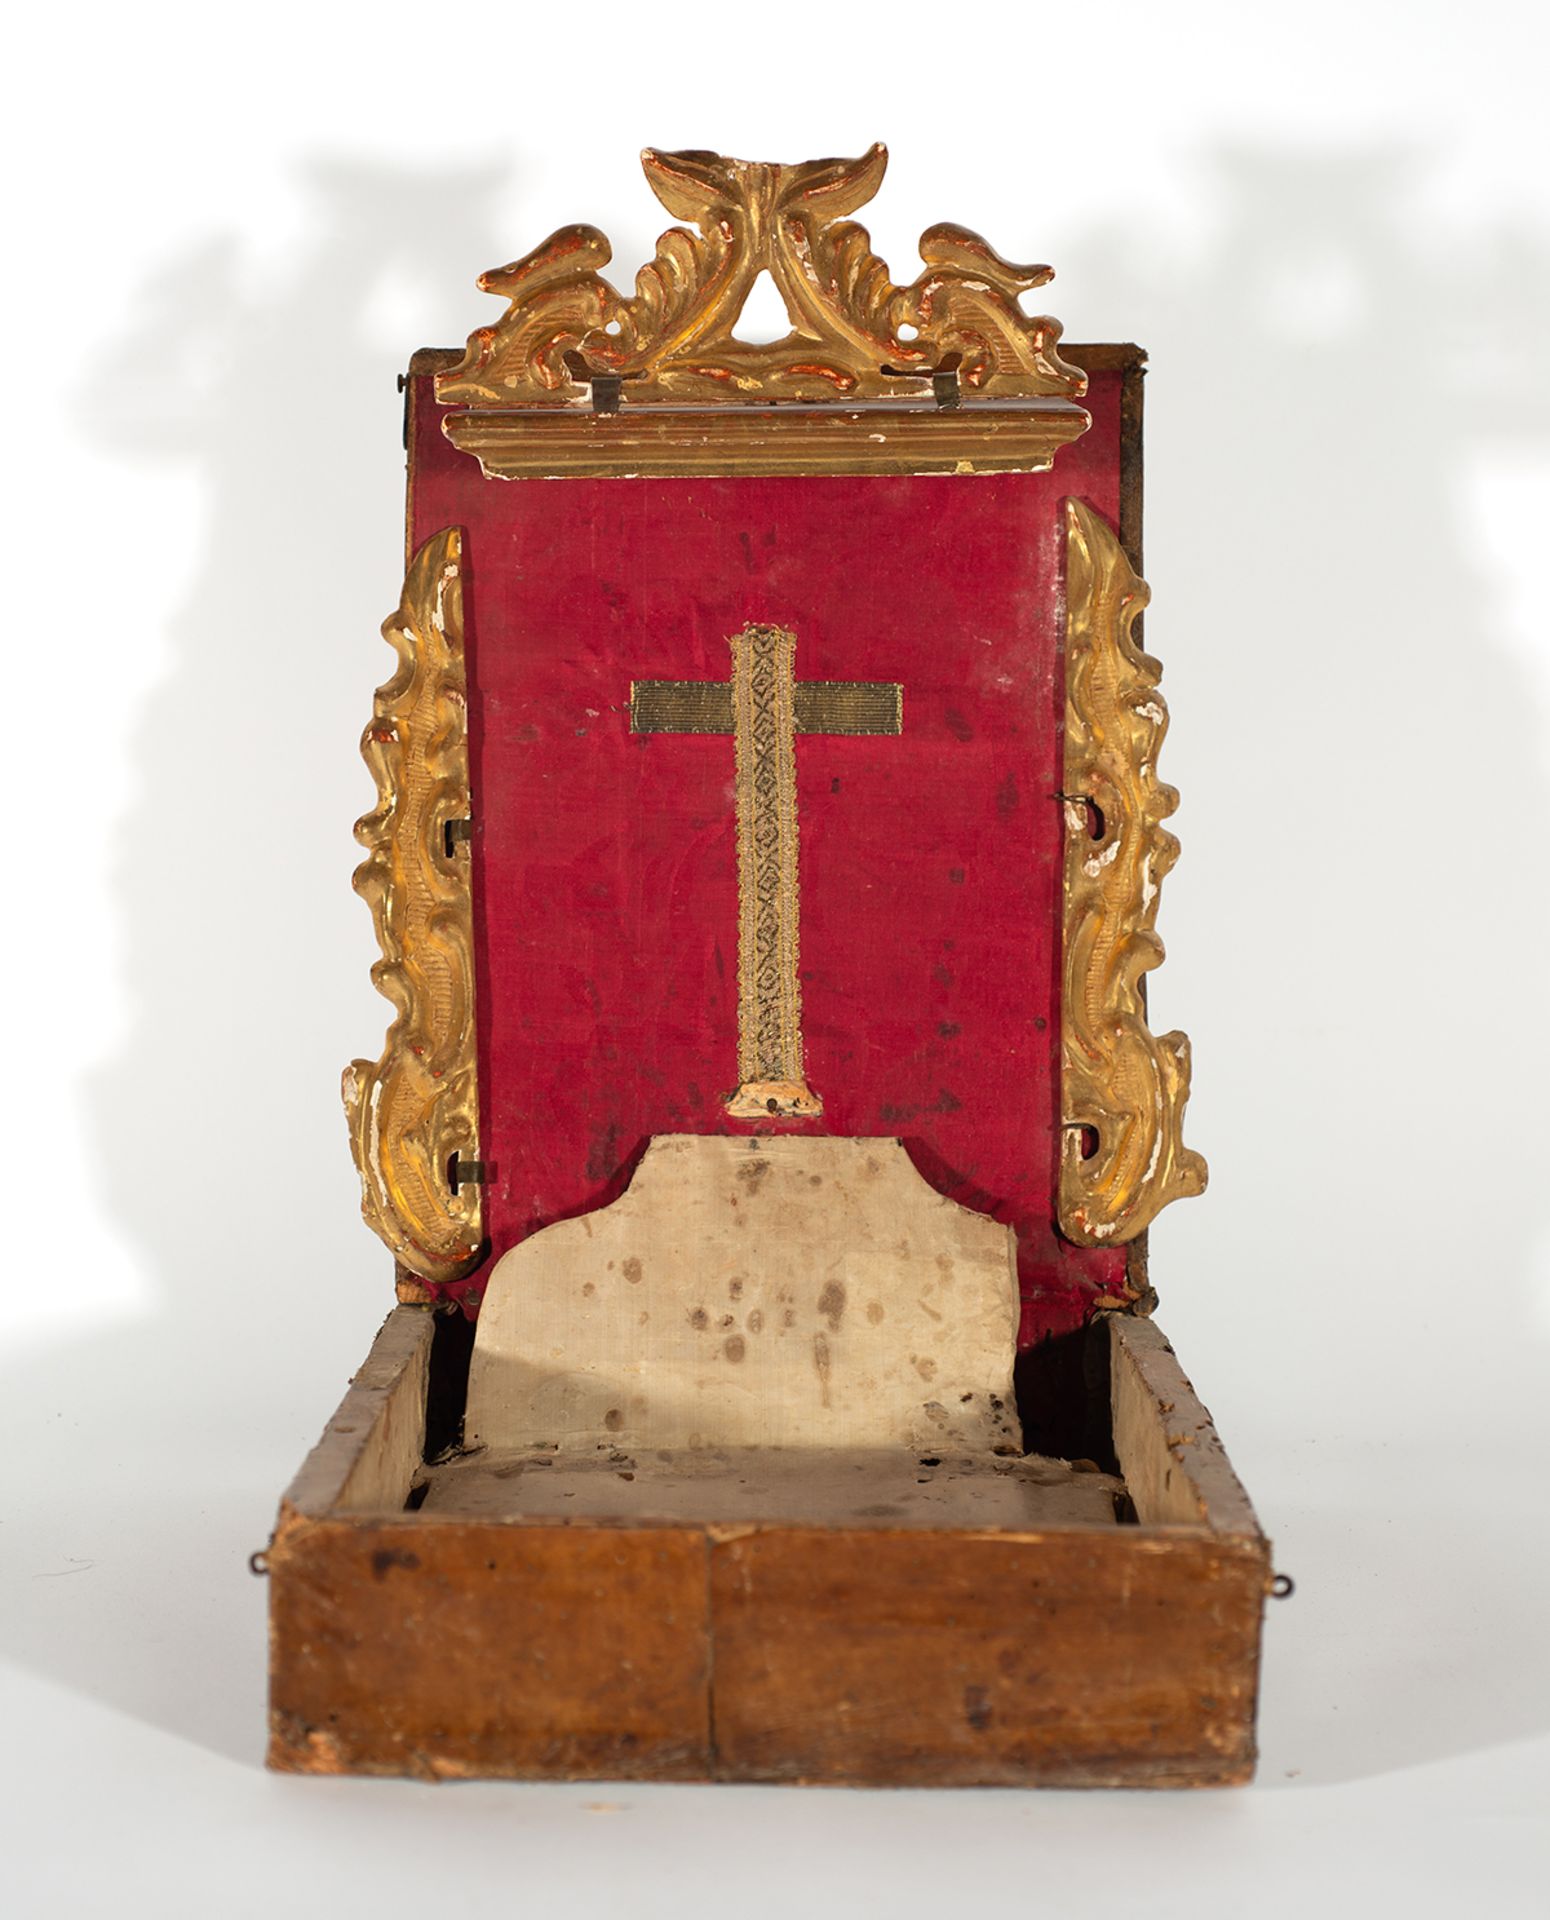 Portable altar, Spain, 17th century